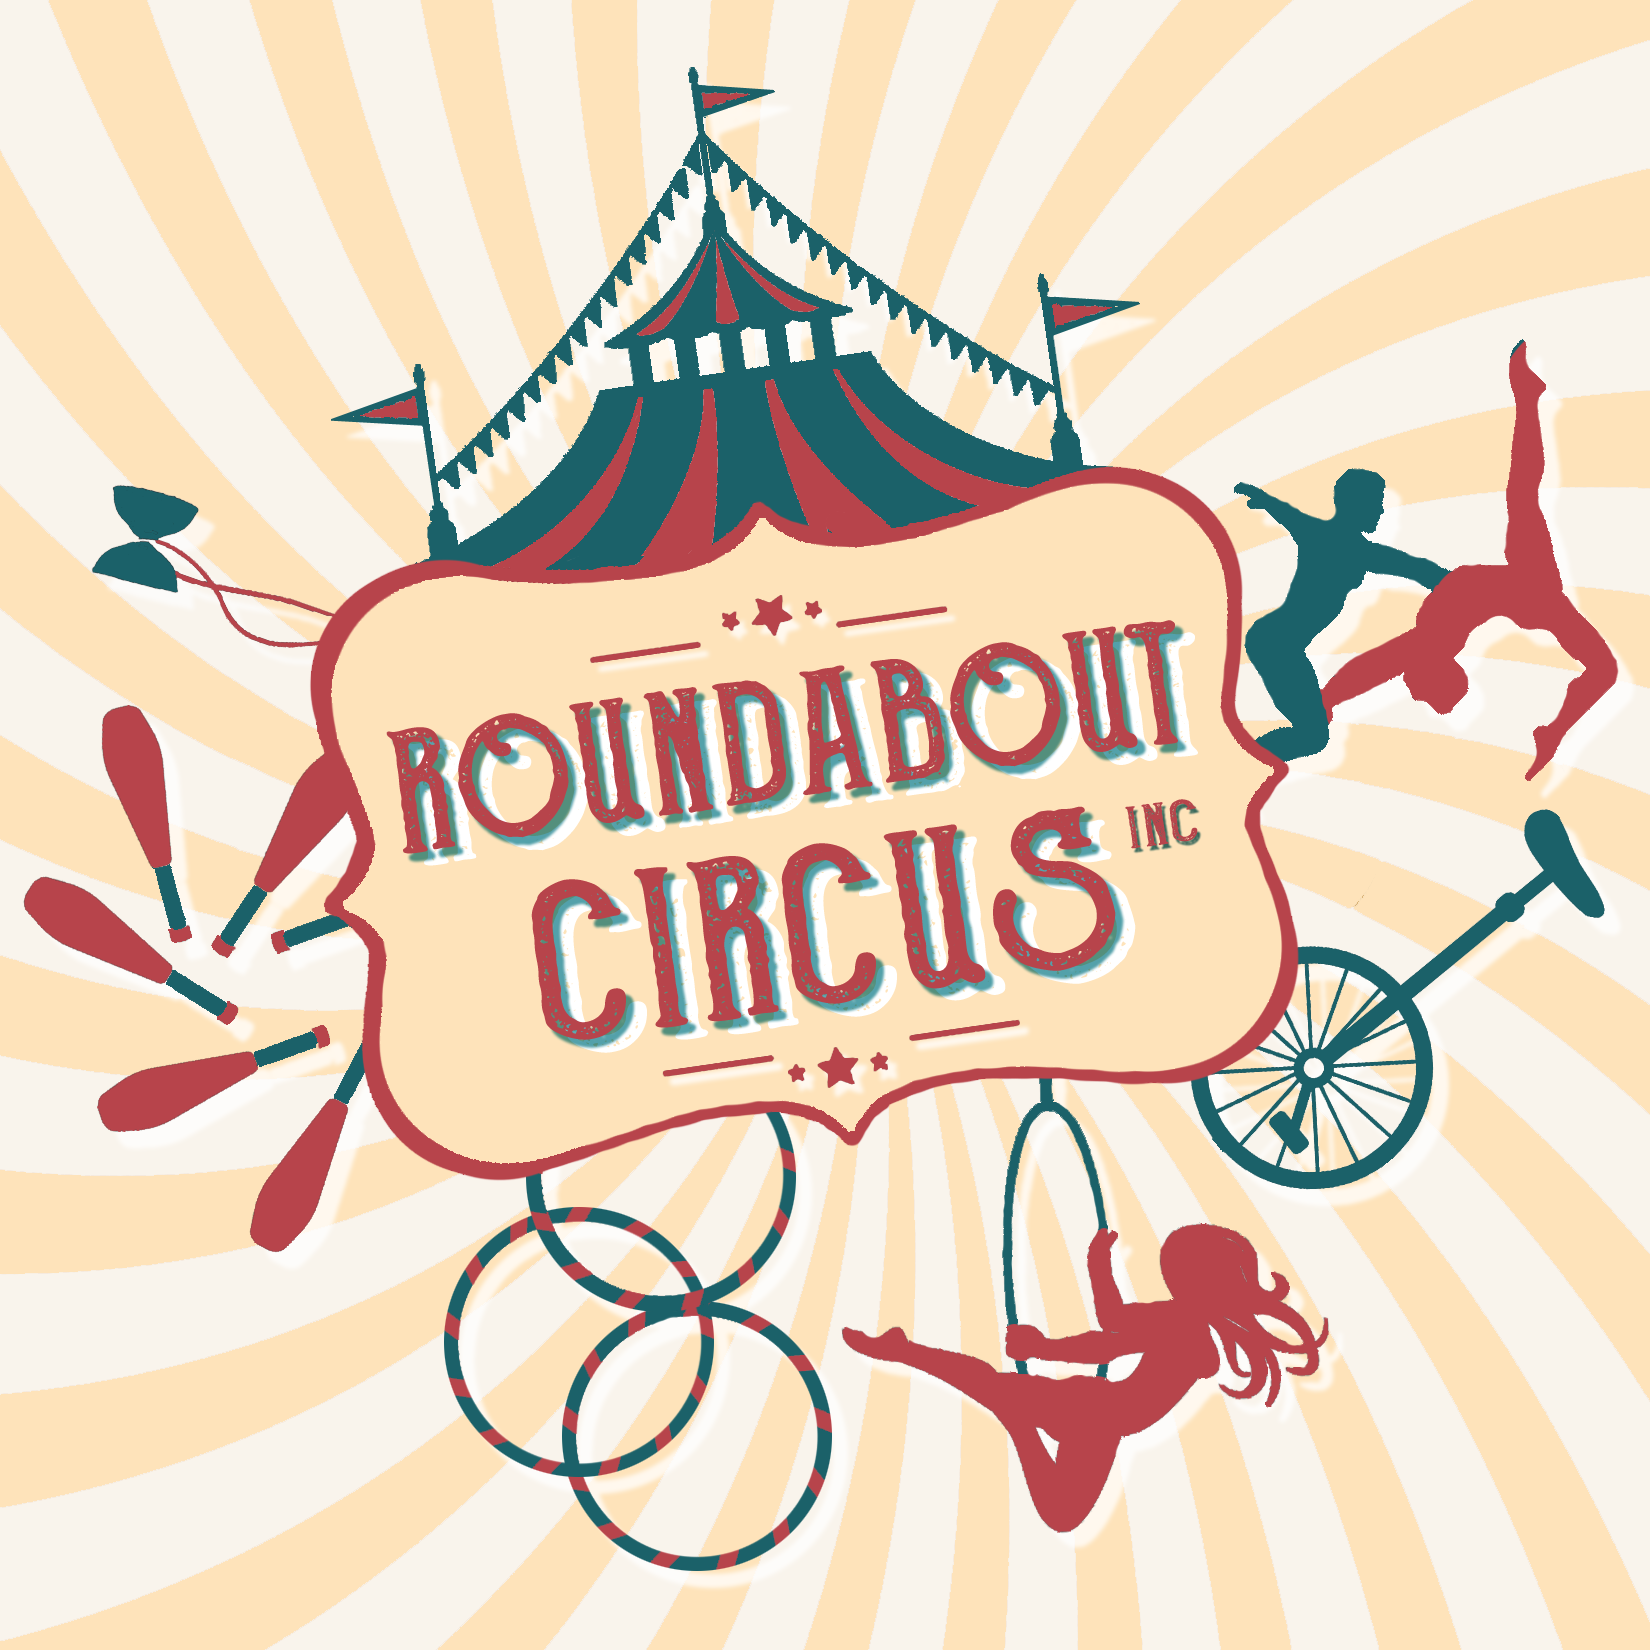 Roundabout Circus